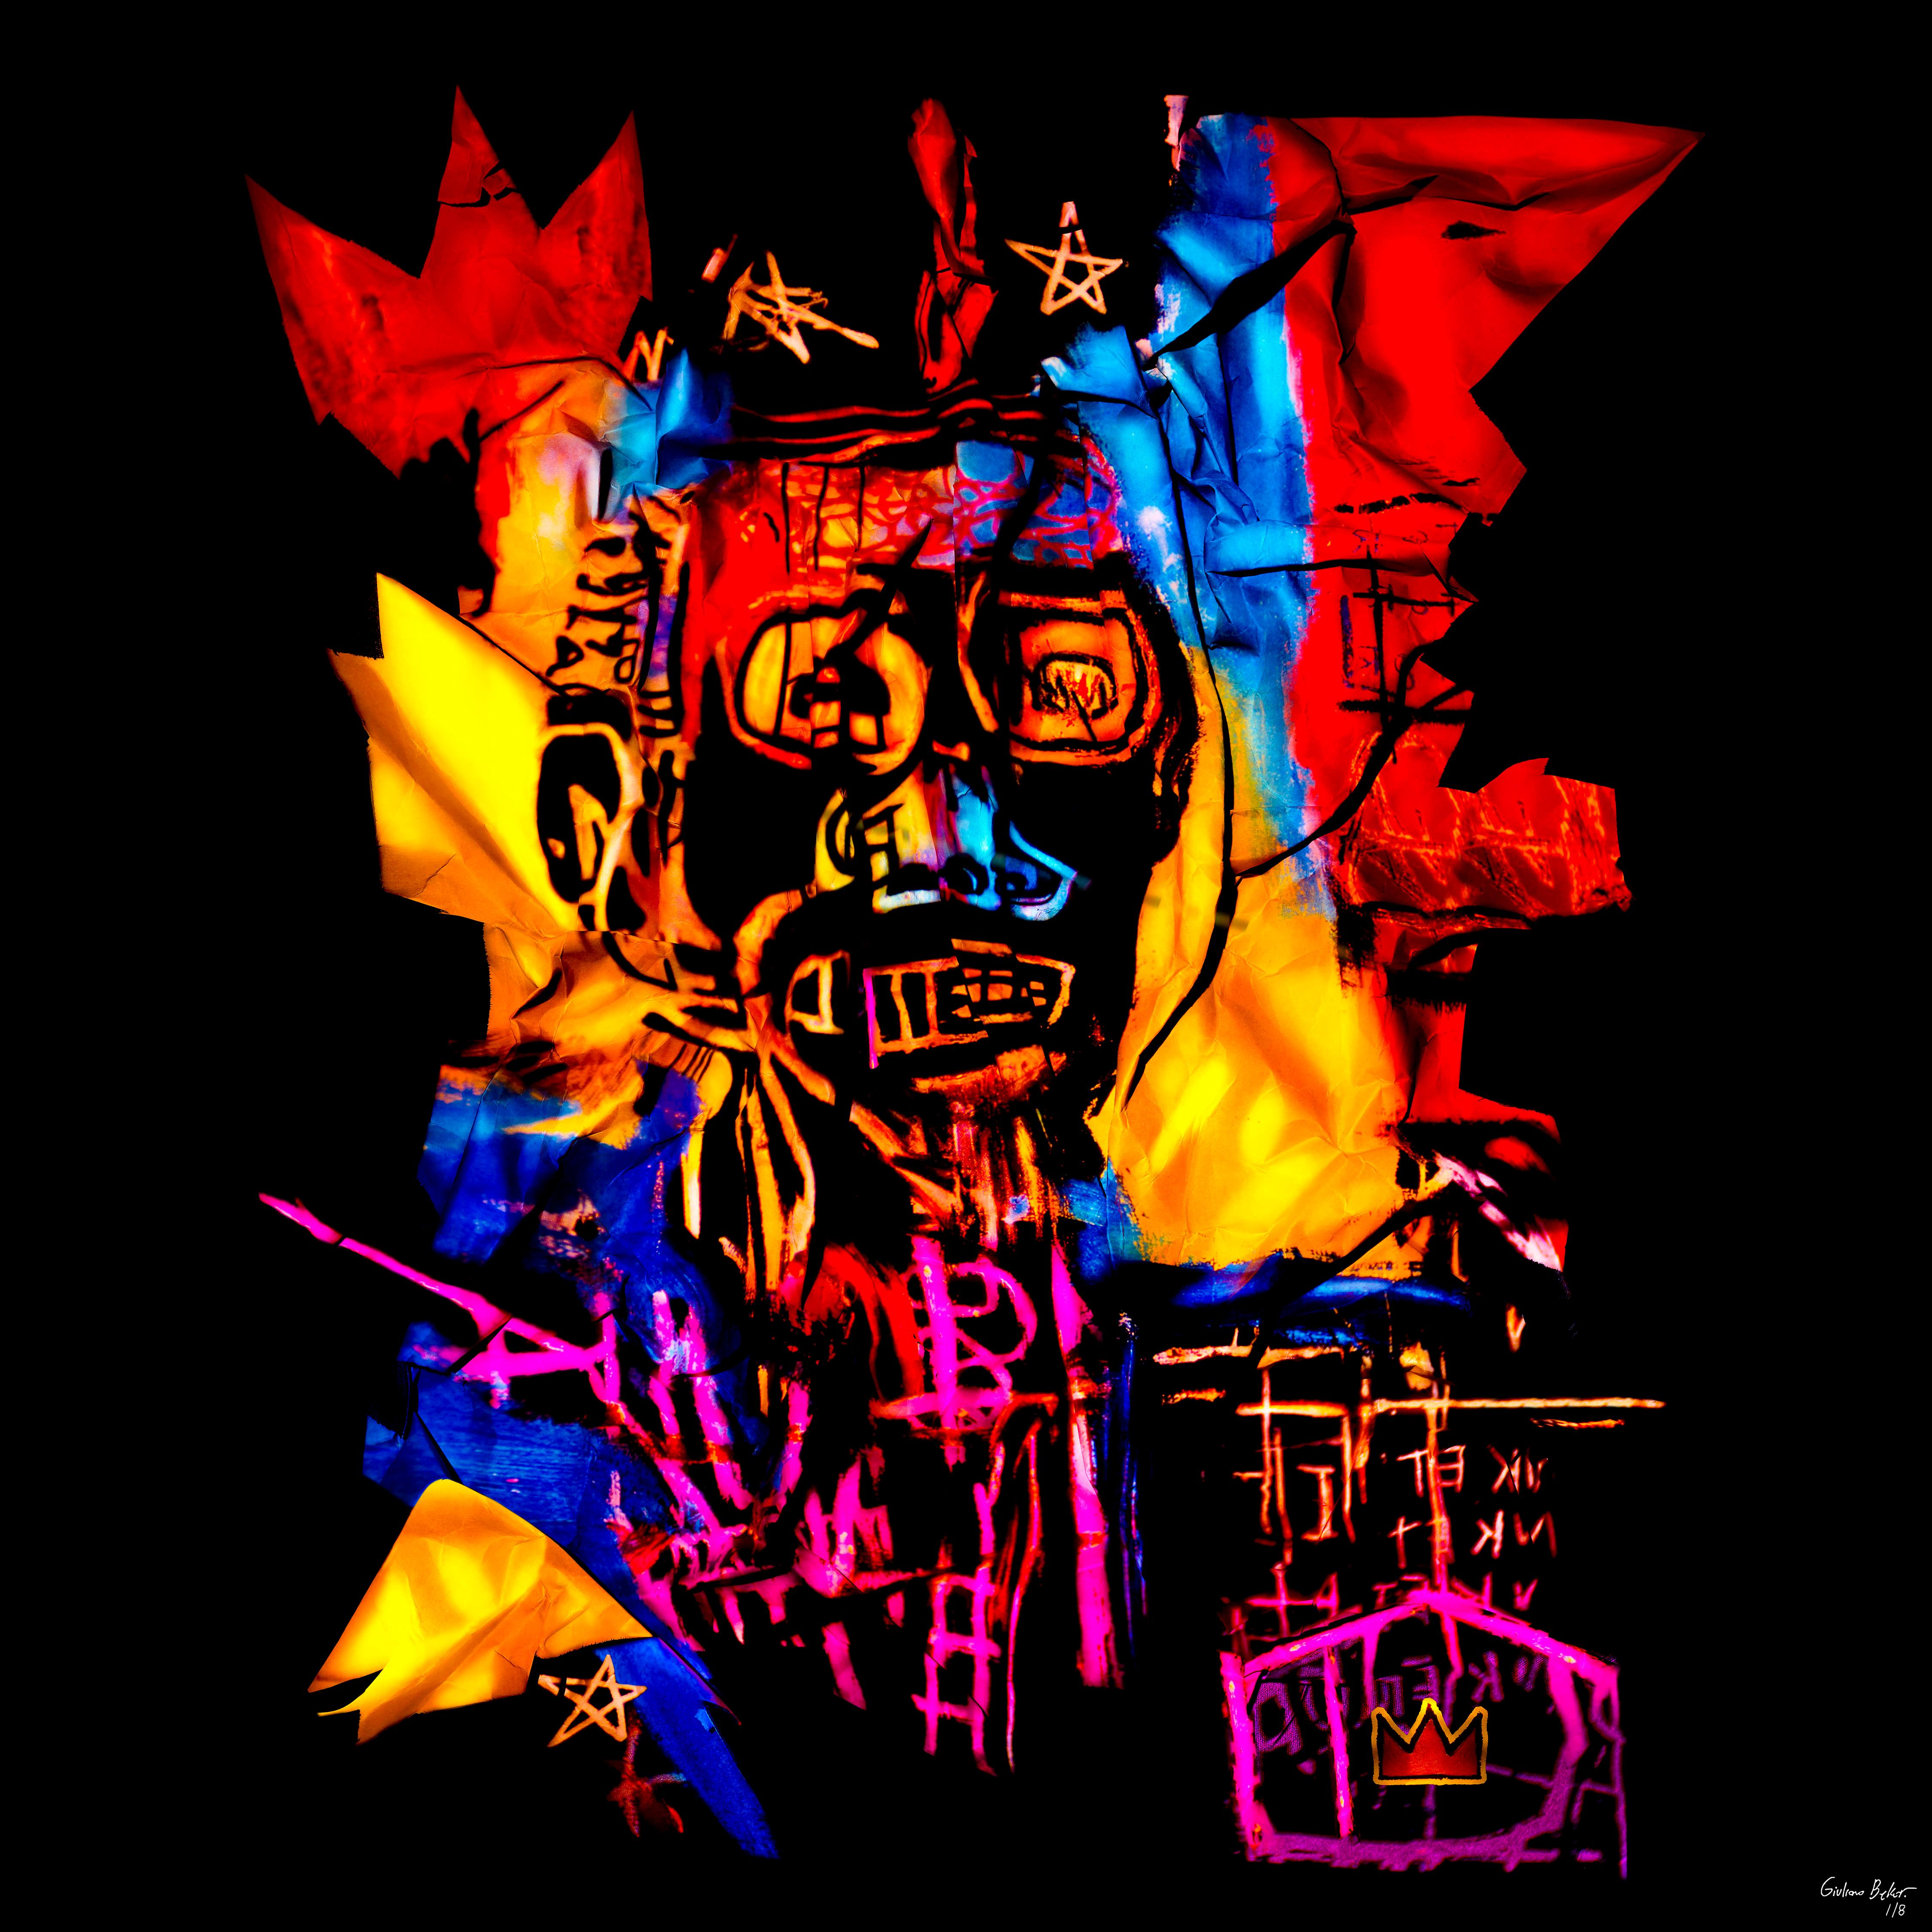 «JM Basquiat-GB3 » Photographie (FRAMÉE) 48" x 48" pouces Ed. 1/8 de Giuliano Bekor

Photographie d'art originale de Giuliano Bekor.
Signé et numéroté par l'artiste.

Titre : Série Basquiat - JMB-GB3
Année : 2020
Taille d'impression : 48" x 48"